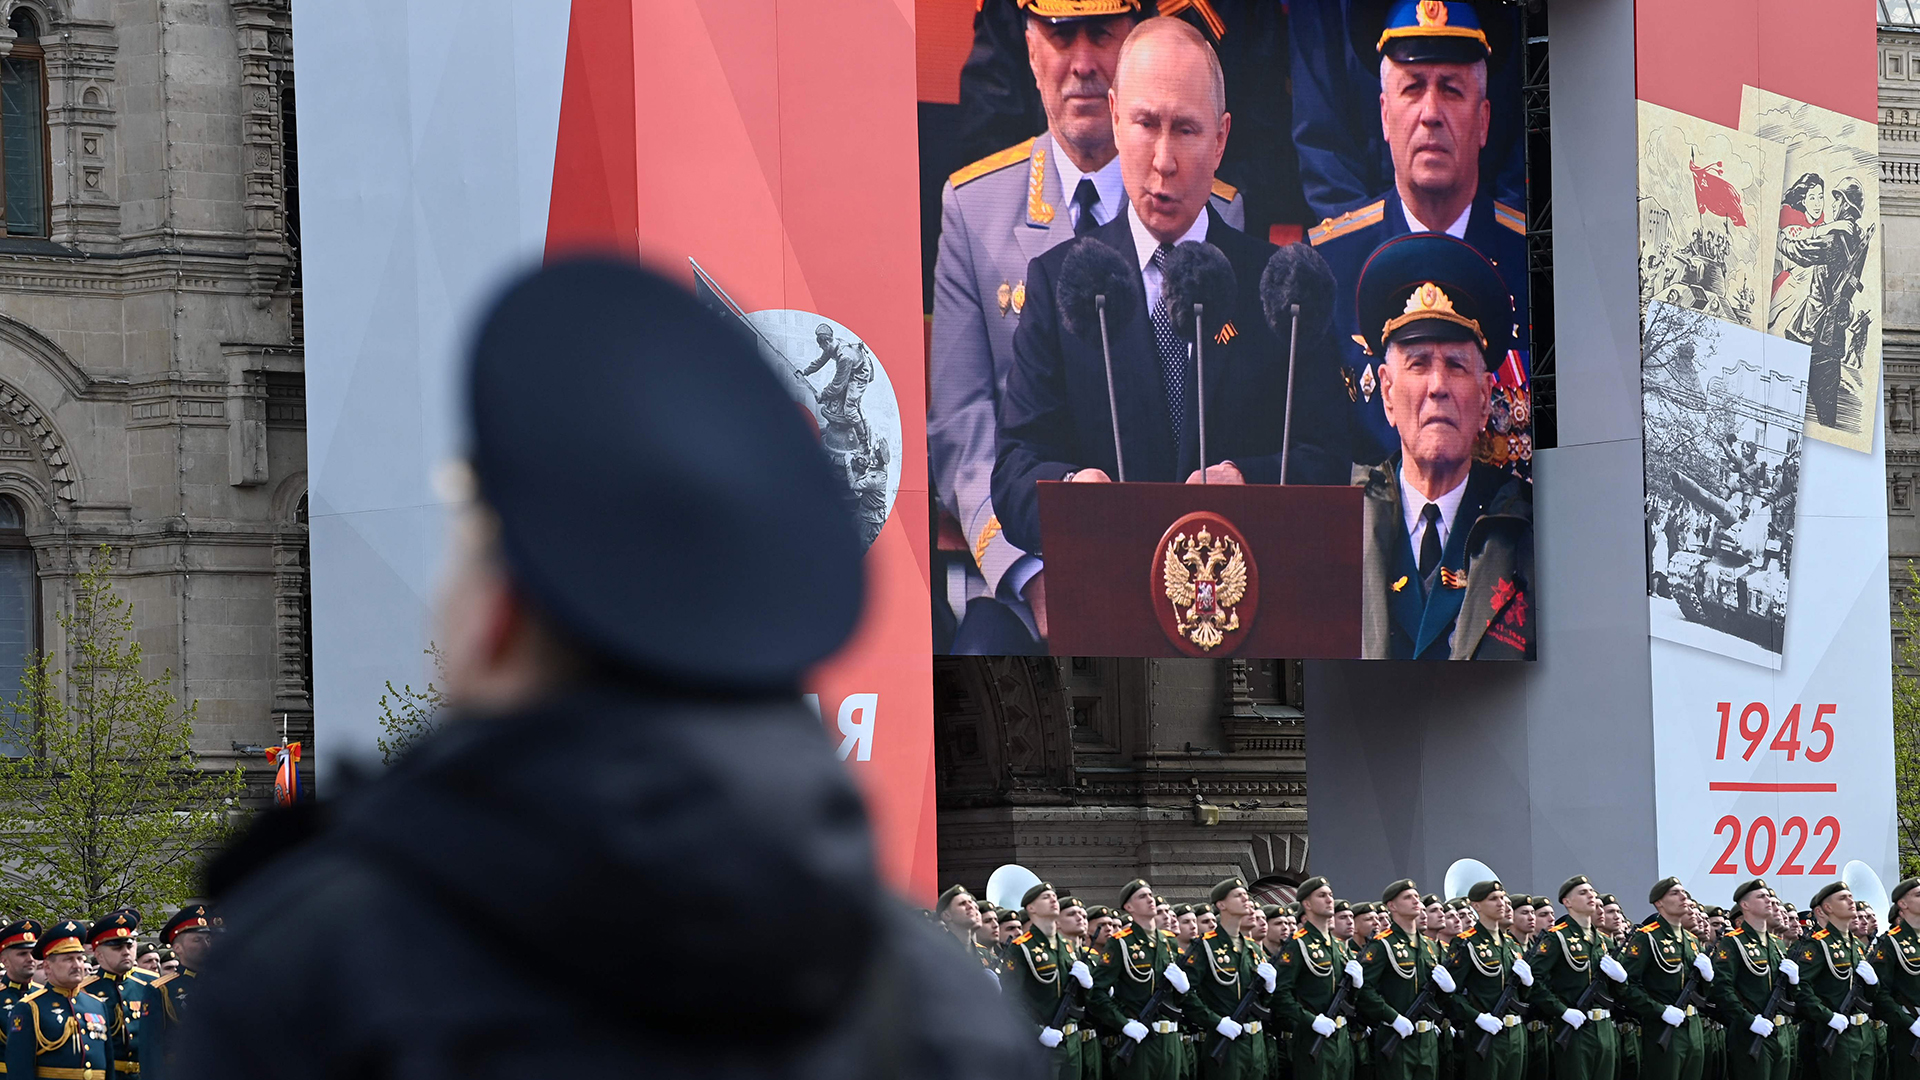 Auf einem Bildschirm ist zu sehen, wie der russische Präsident Wladimir Putin eine Rede hält.